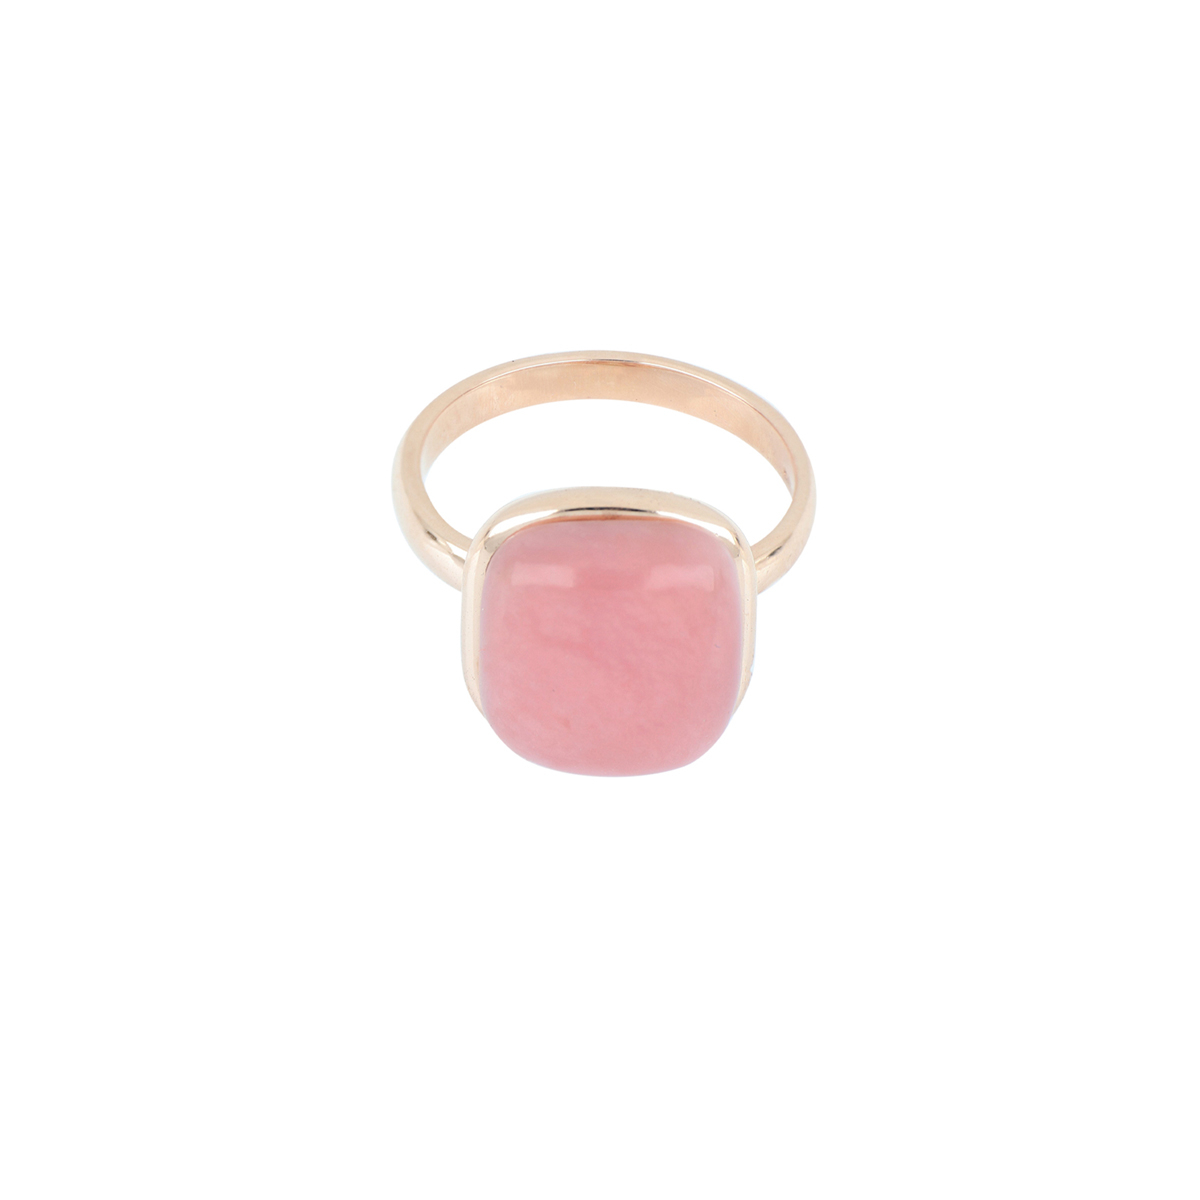  Cabochon Cut Pink Quartz Ring